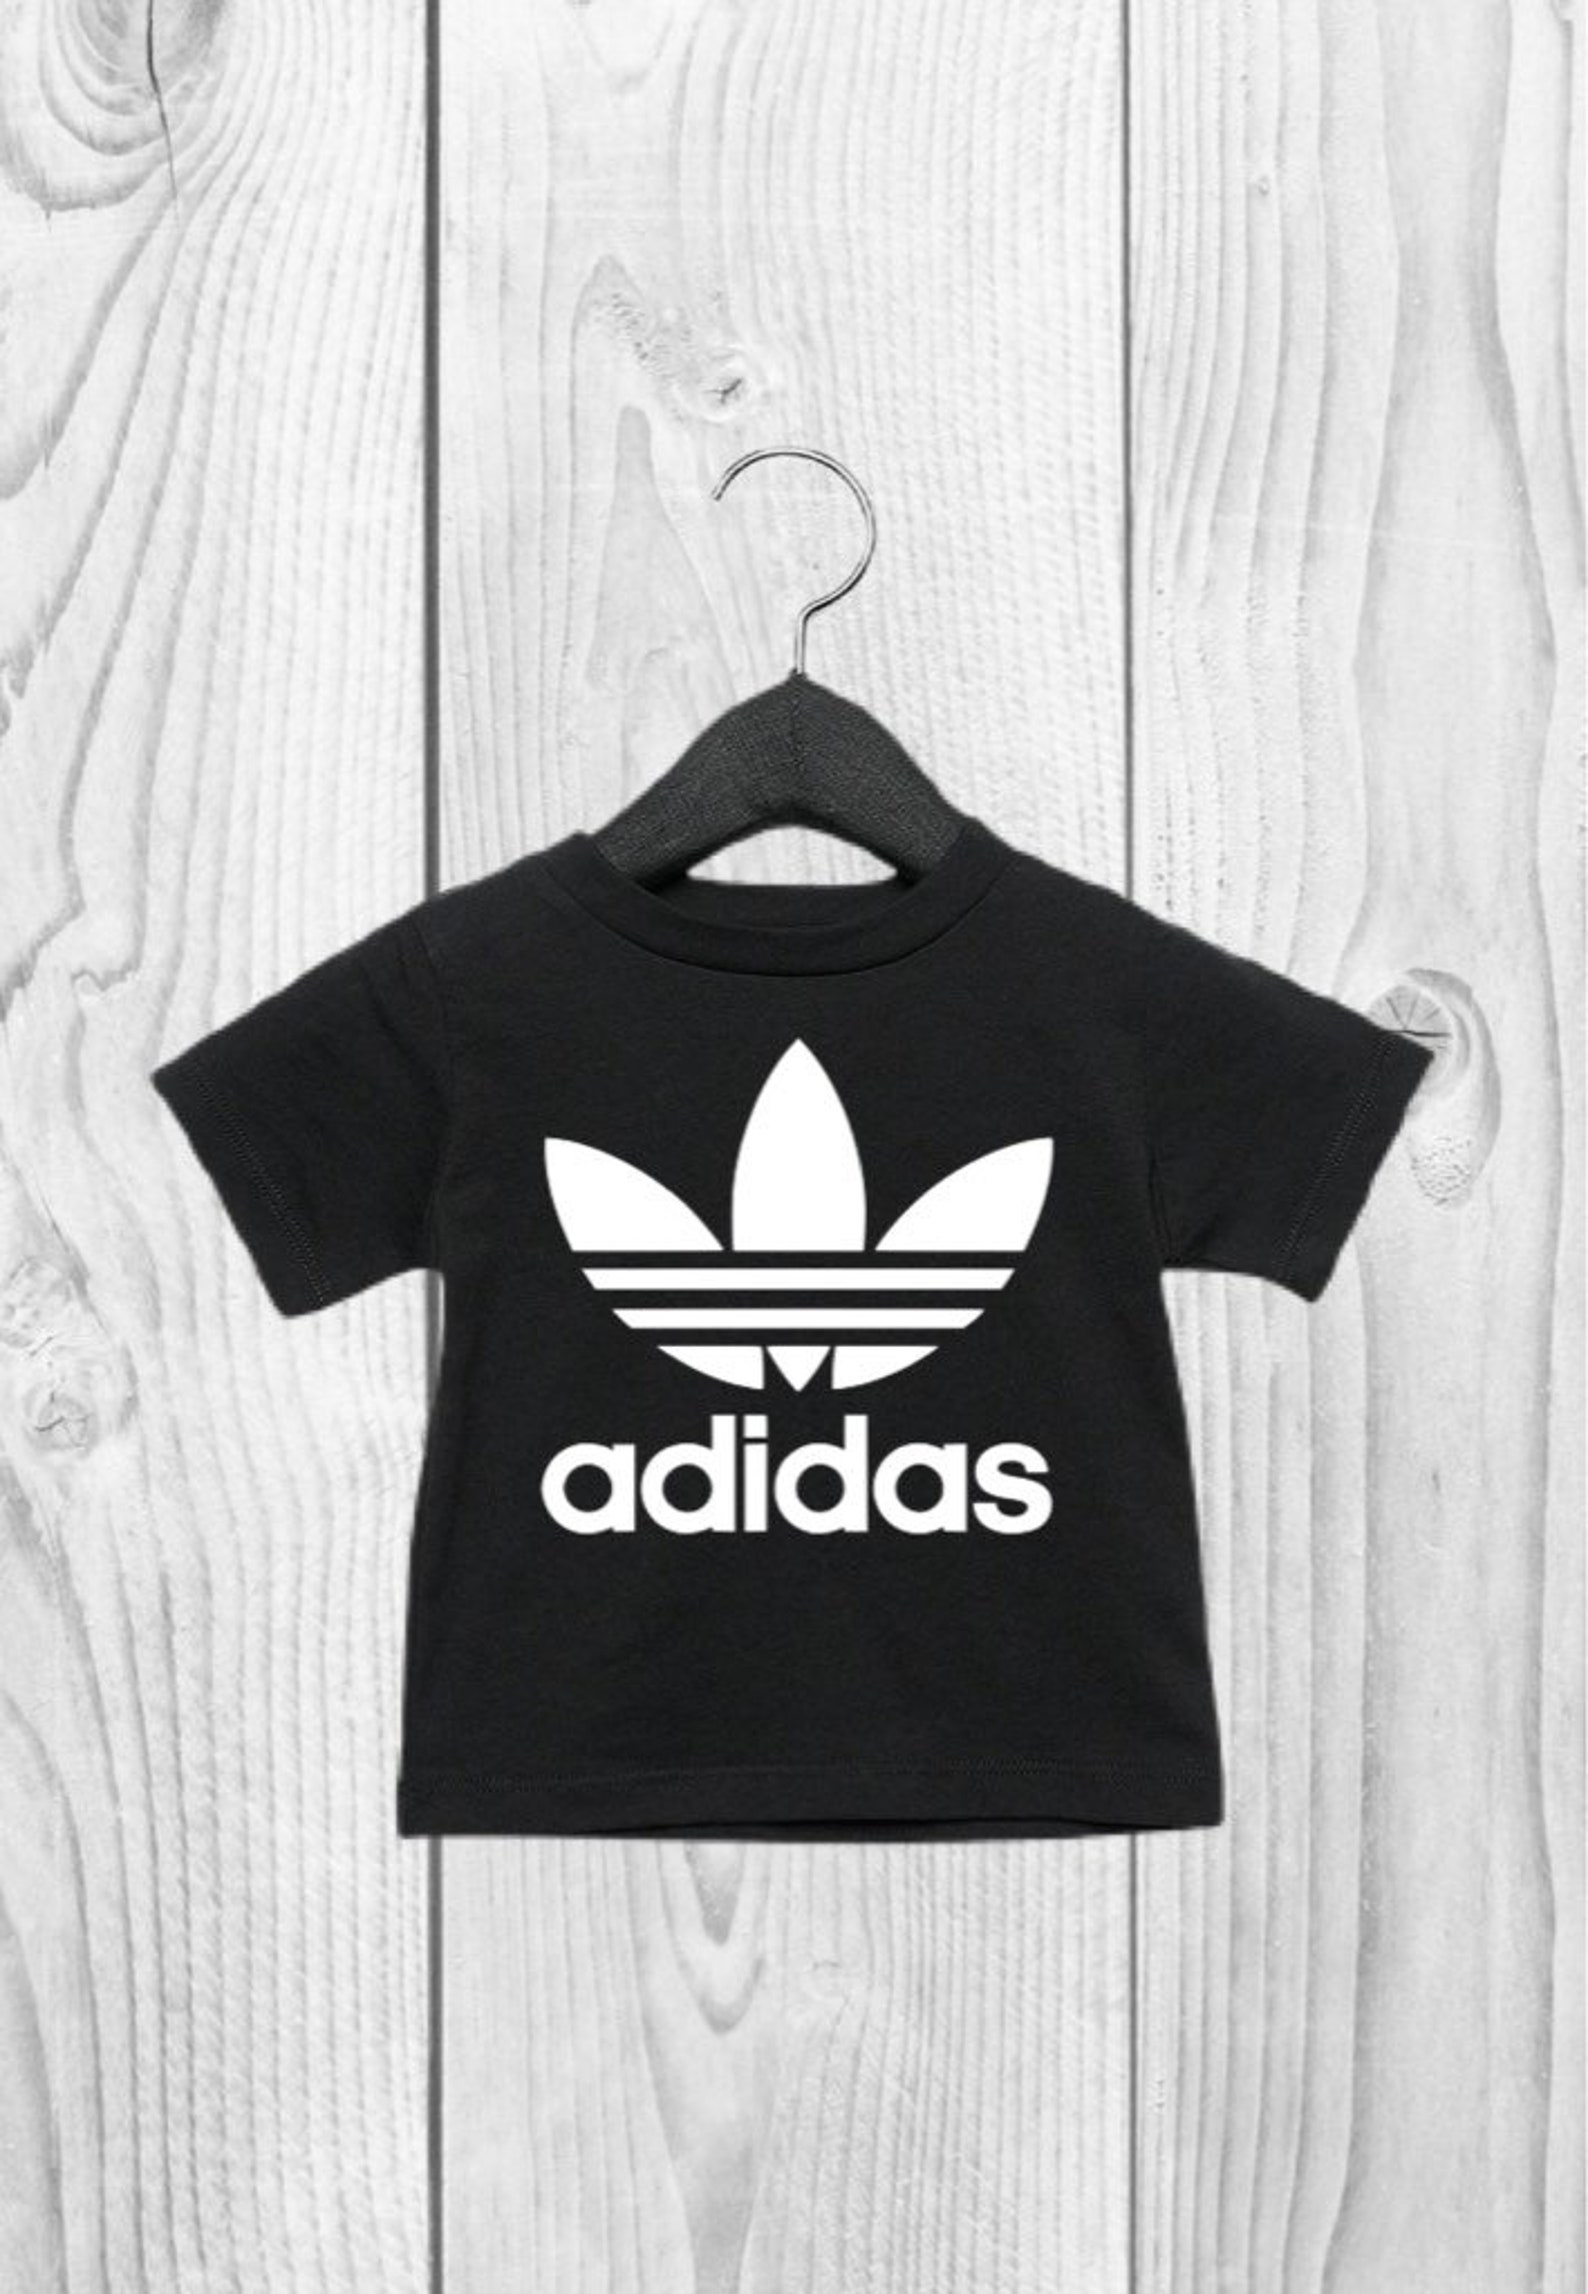 Adidas Toddler T-shirt/Onesie Gender Neutral Kids Clothes | Etsy